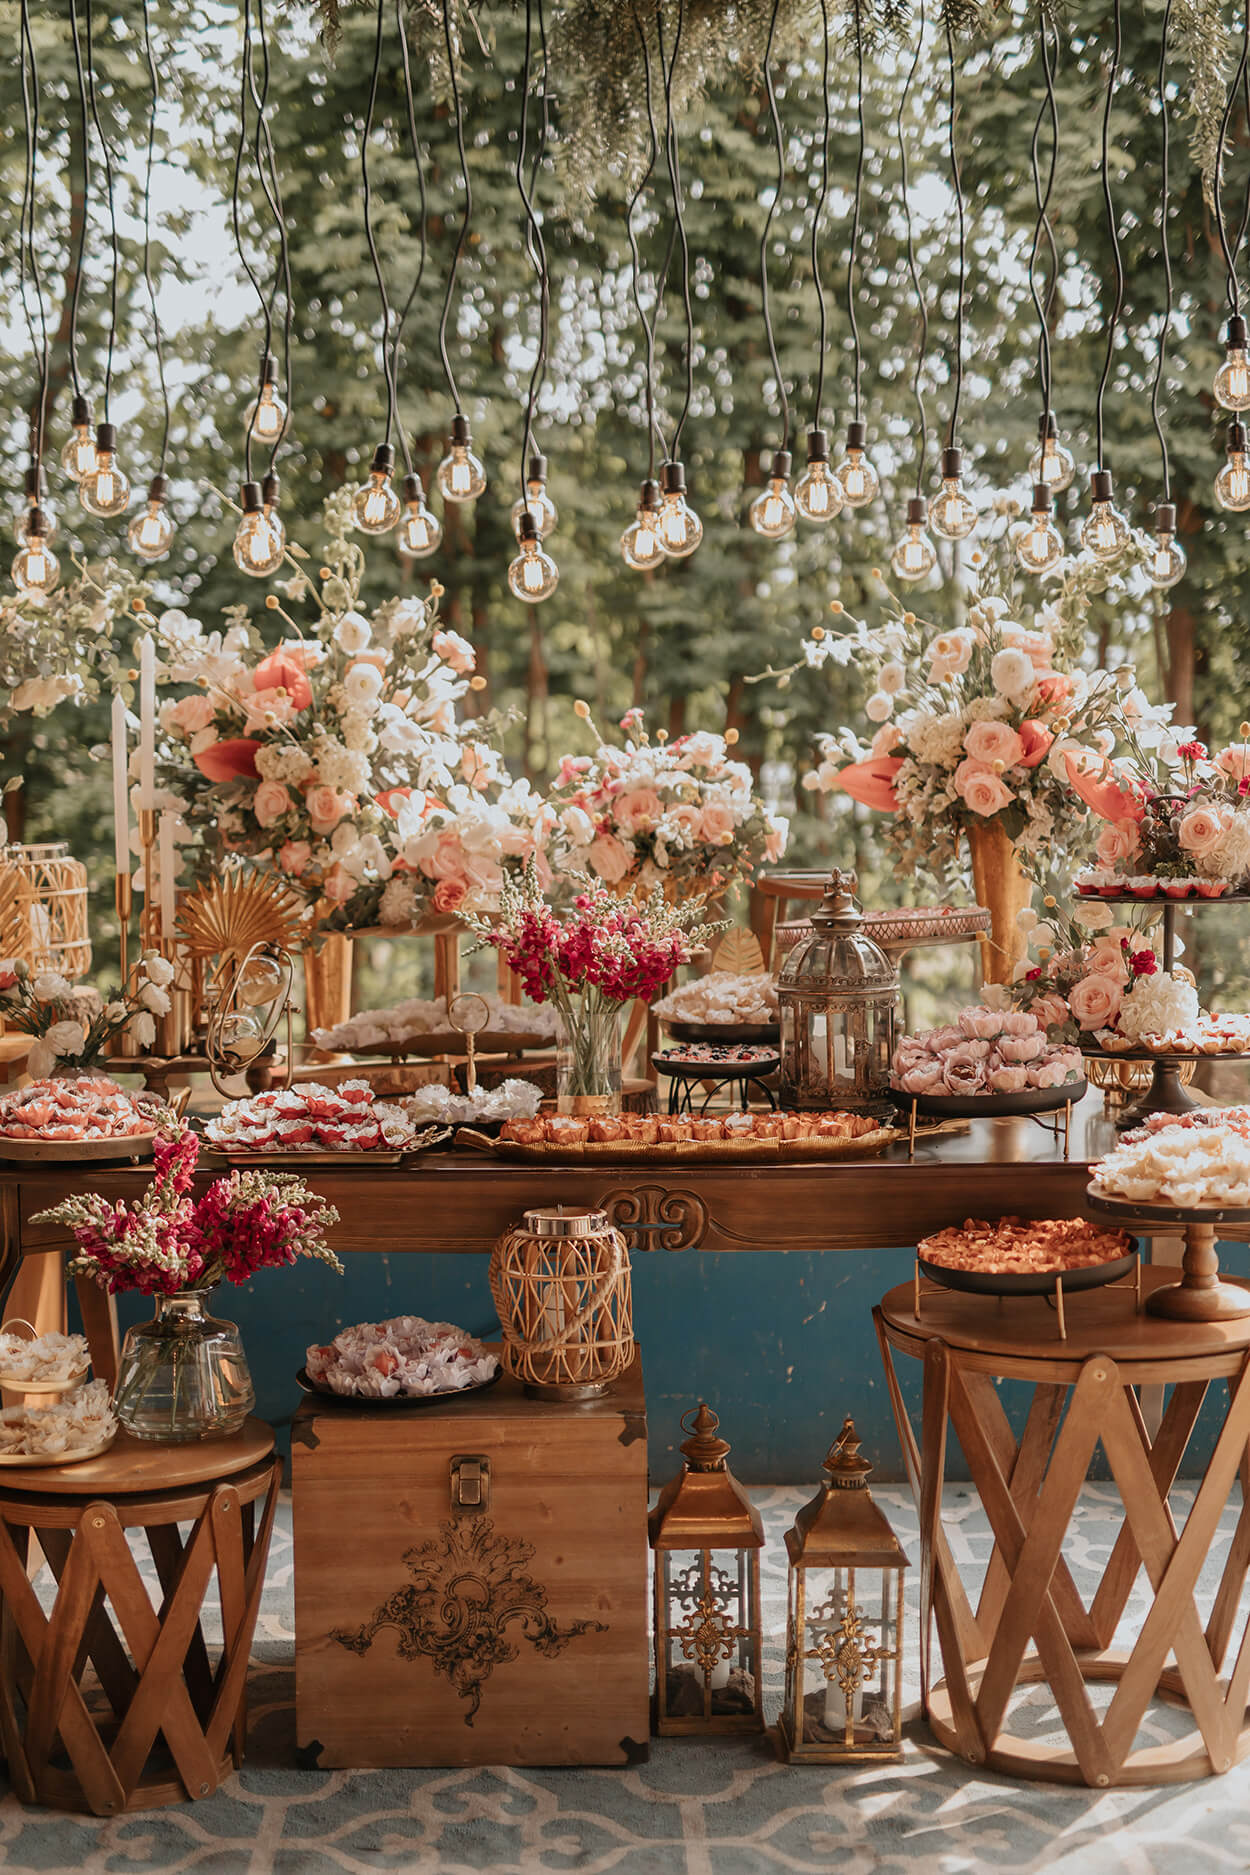 mesas com bolo de casamento com vasos de flores brancas e rosas